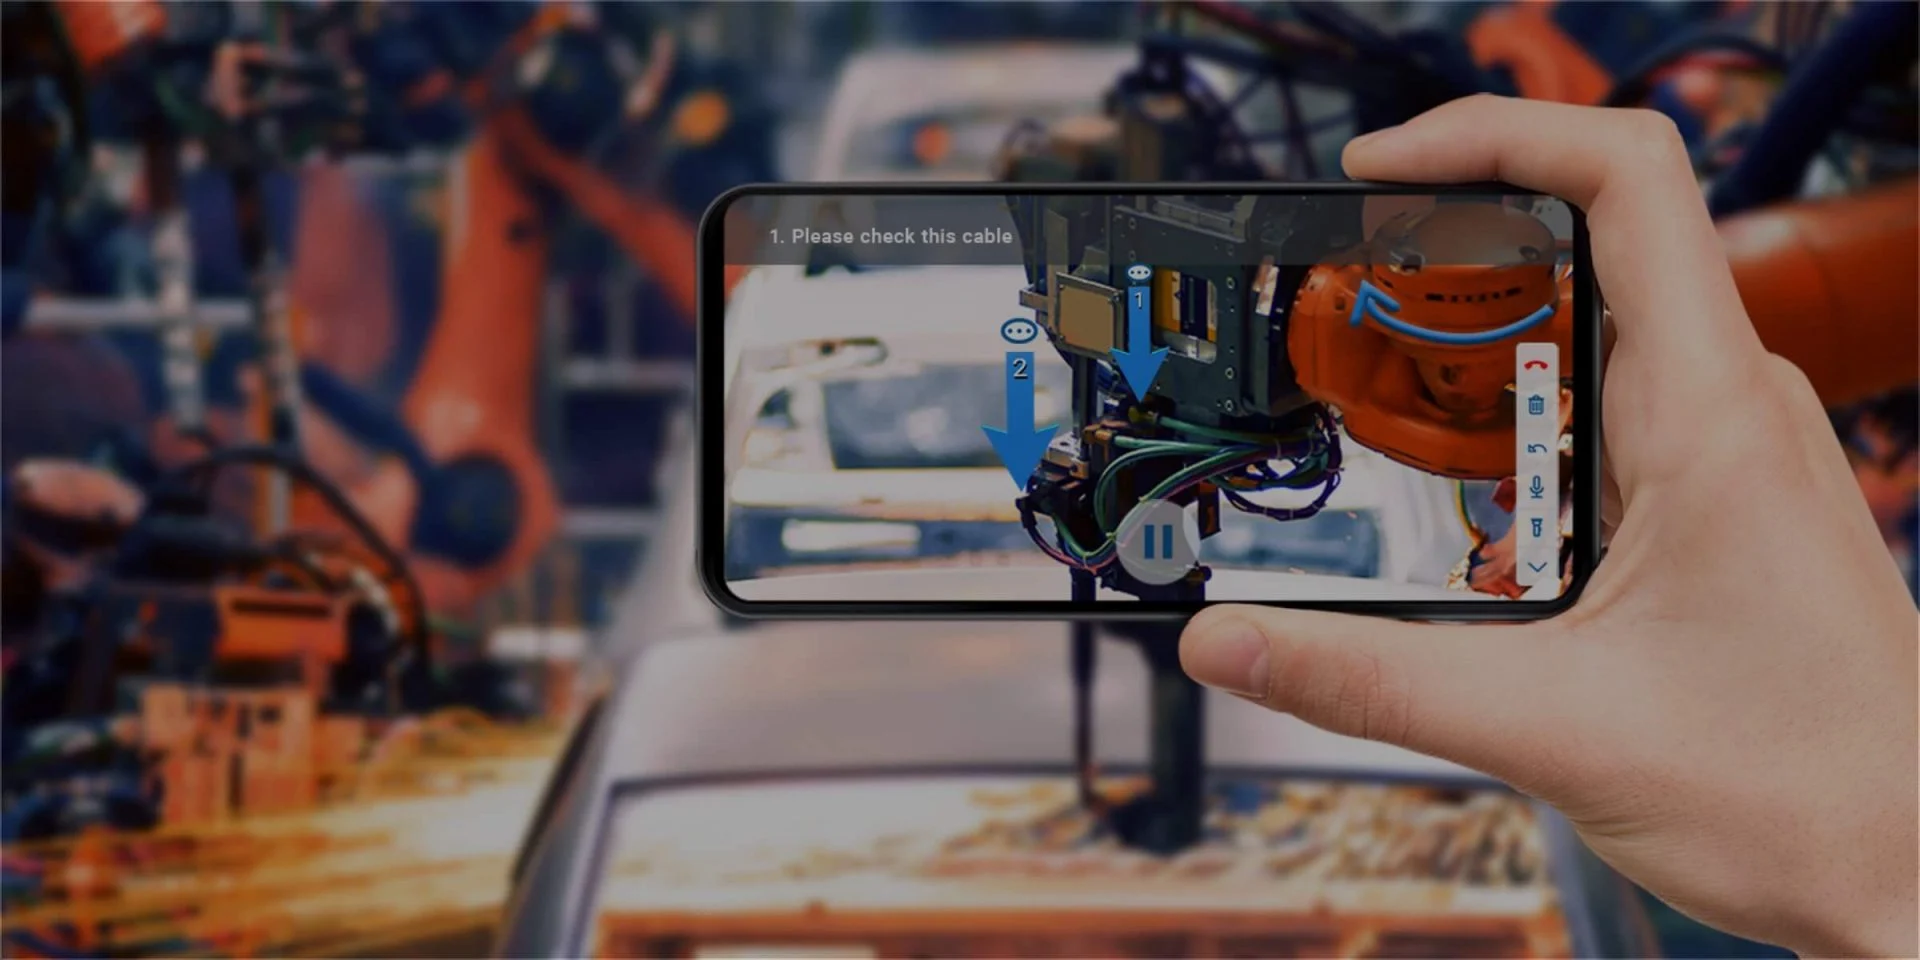 一只手拿着手机，屏幕上显示着增强现实（AR）技术，指导查看和维护机器人臂内部的电缆。